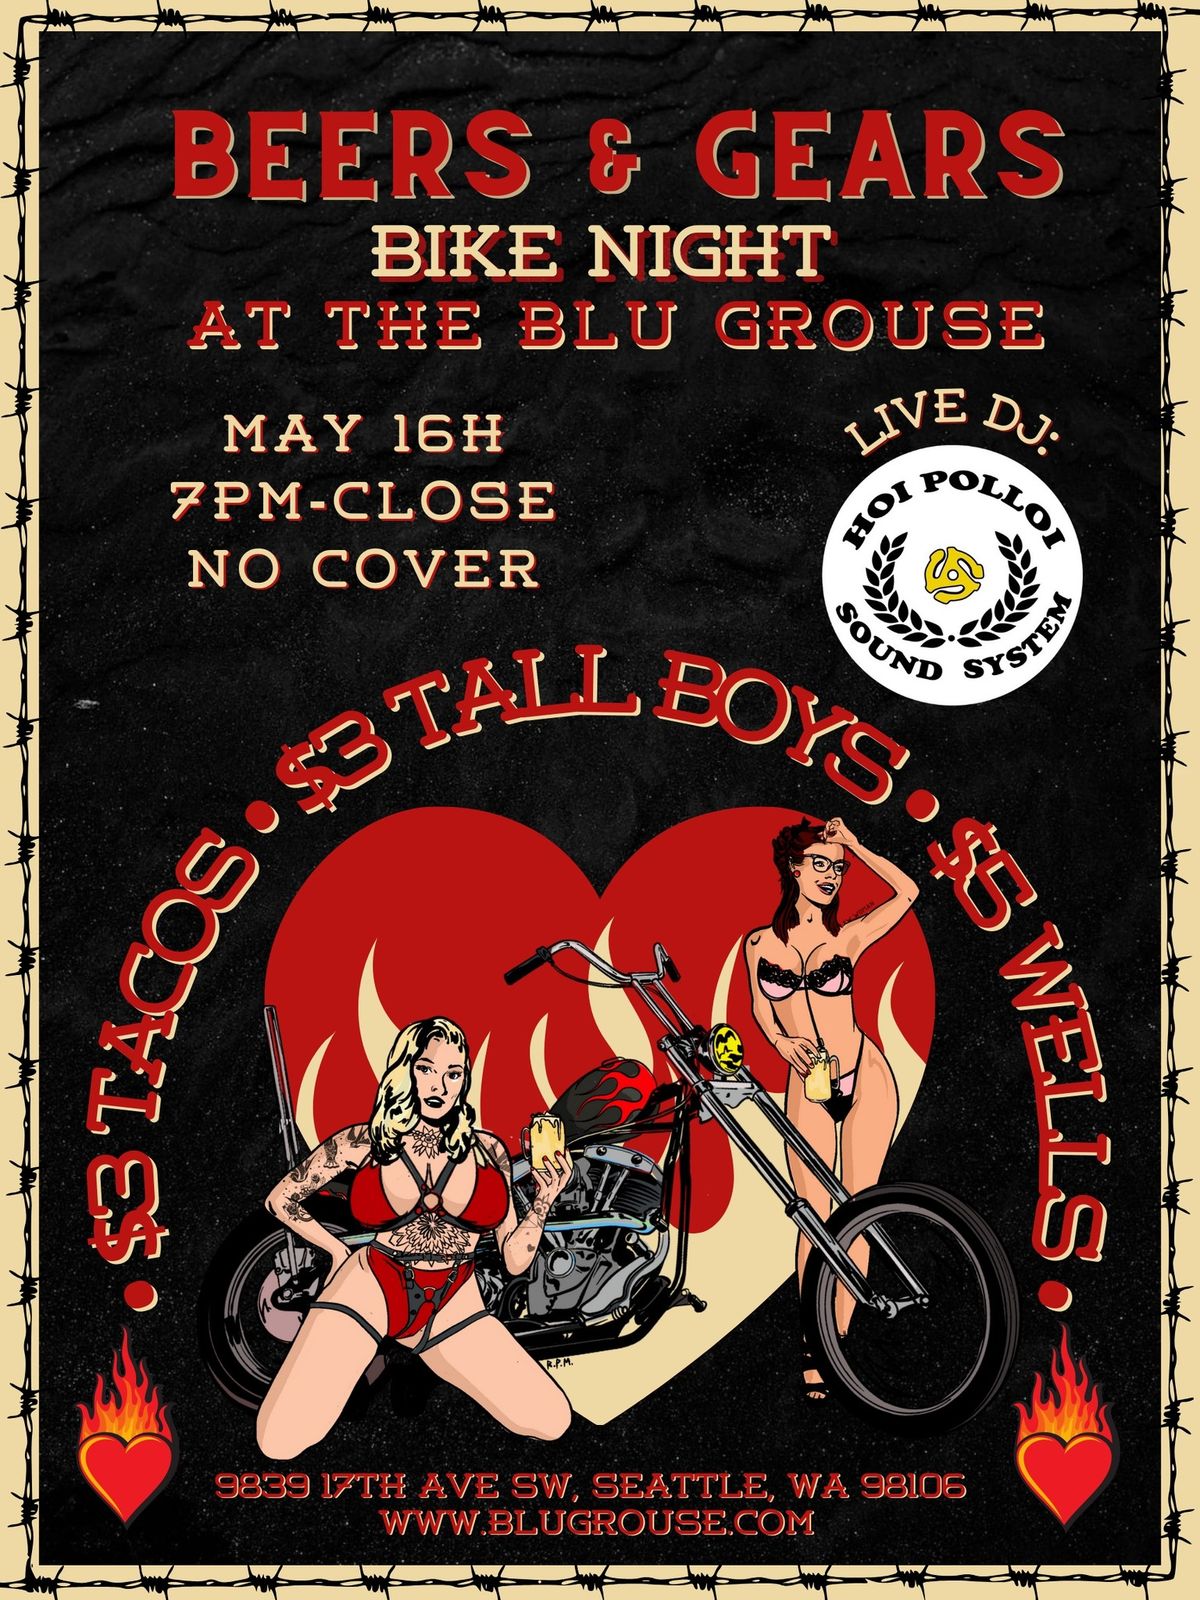 Beers & Gears Bike Night